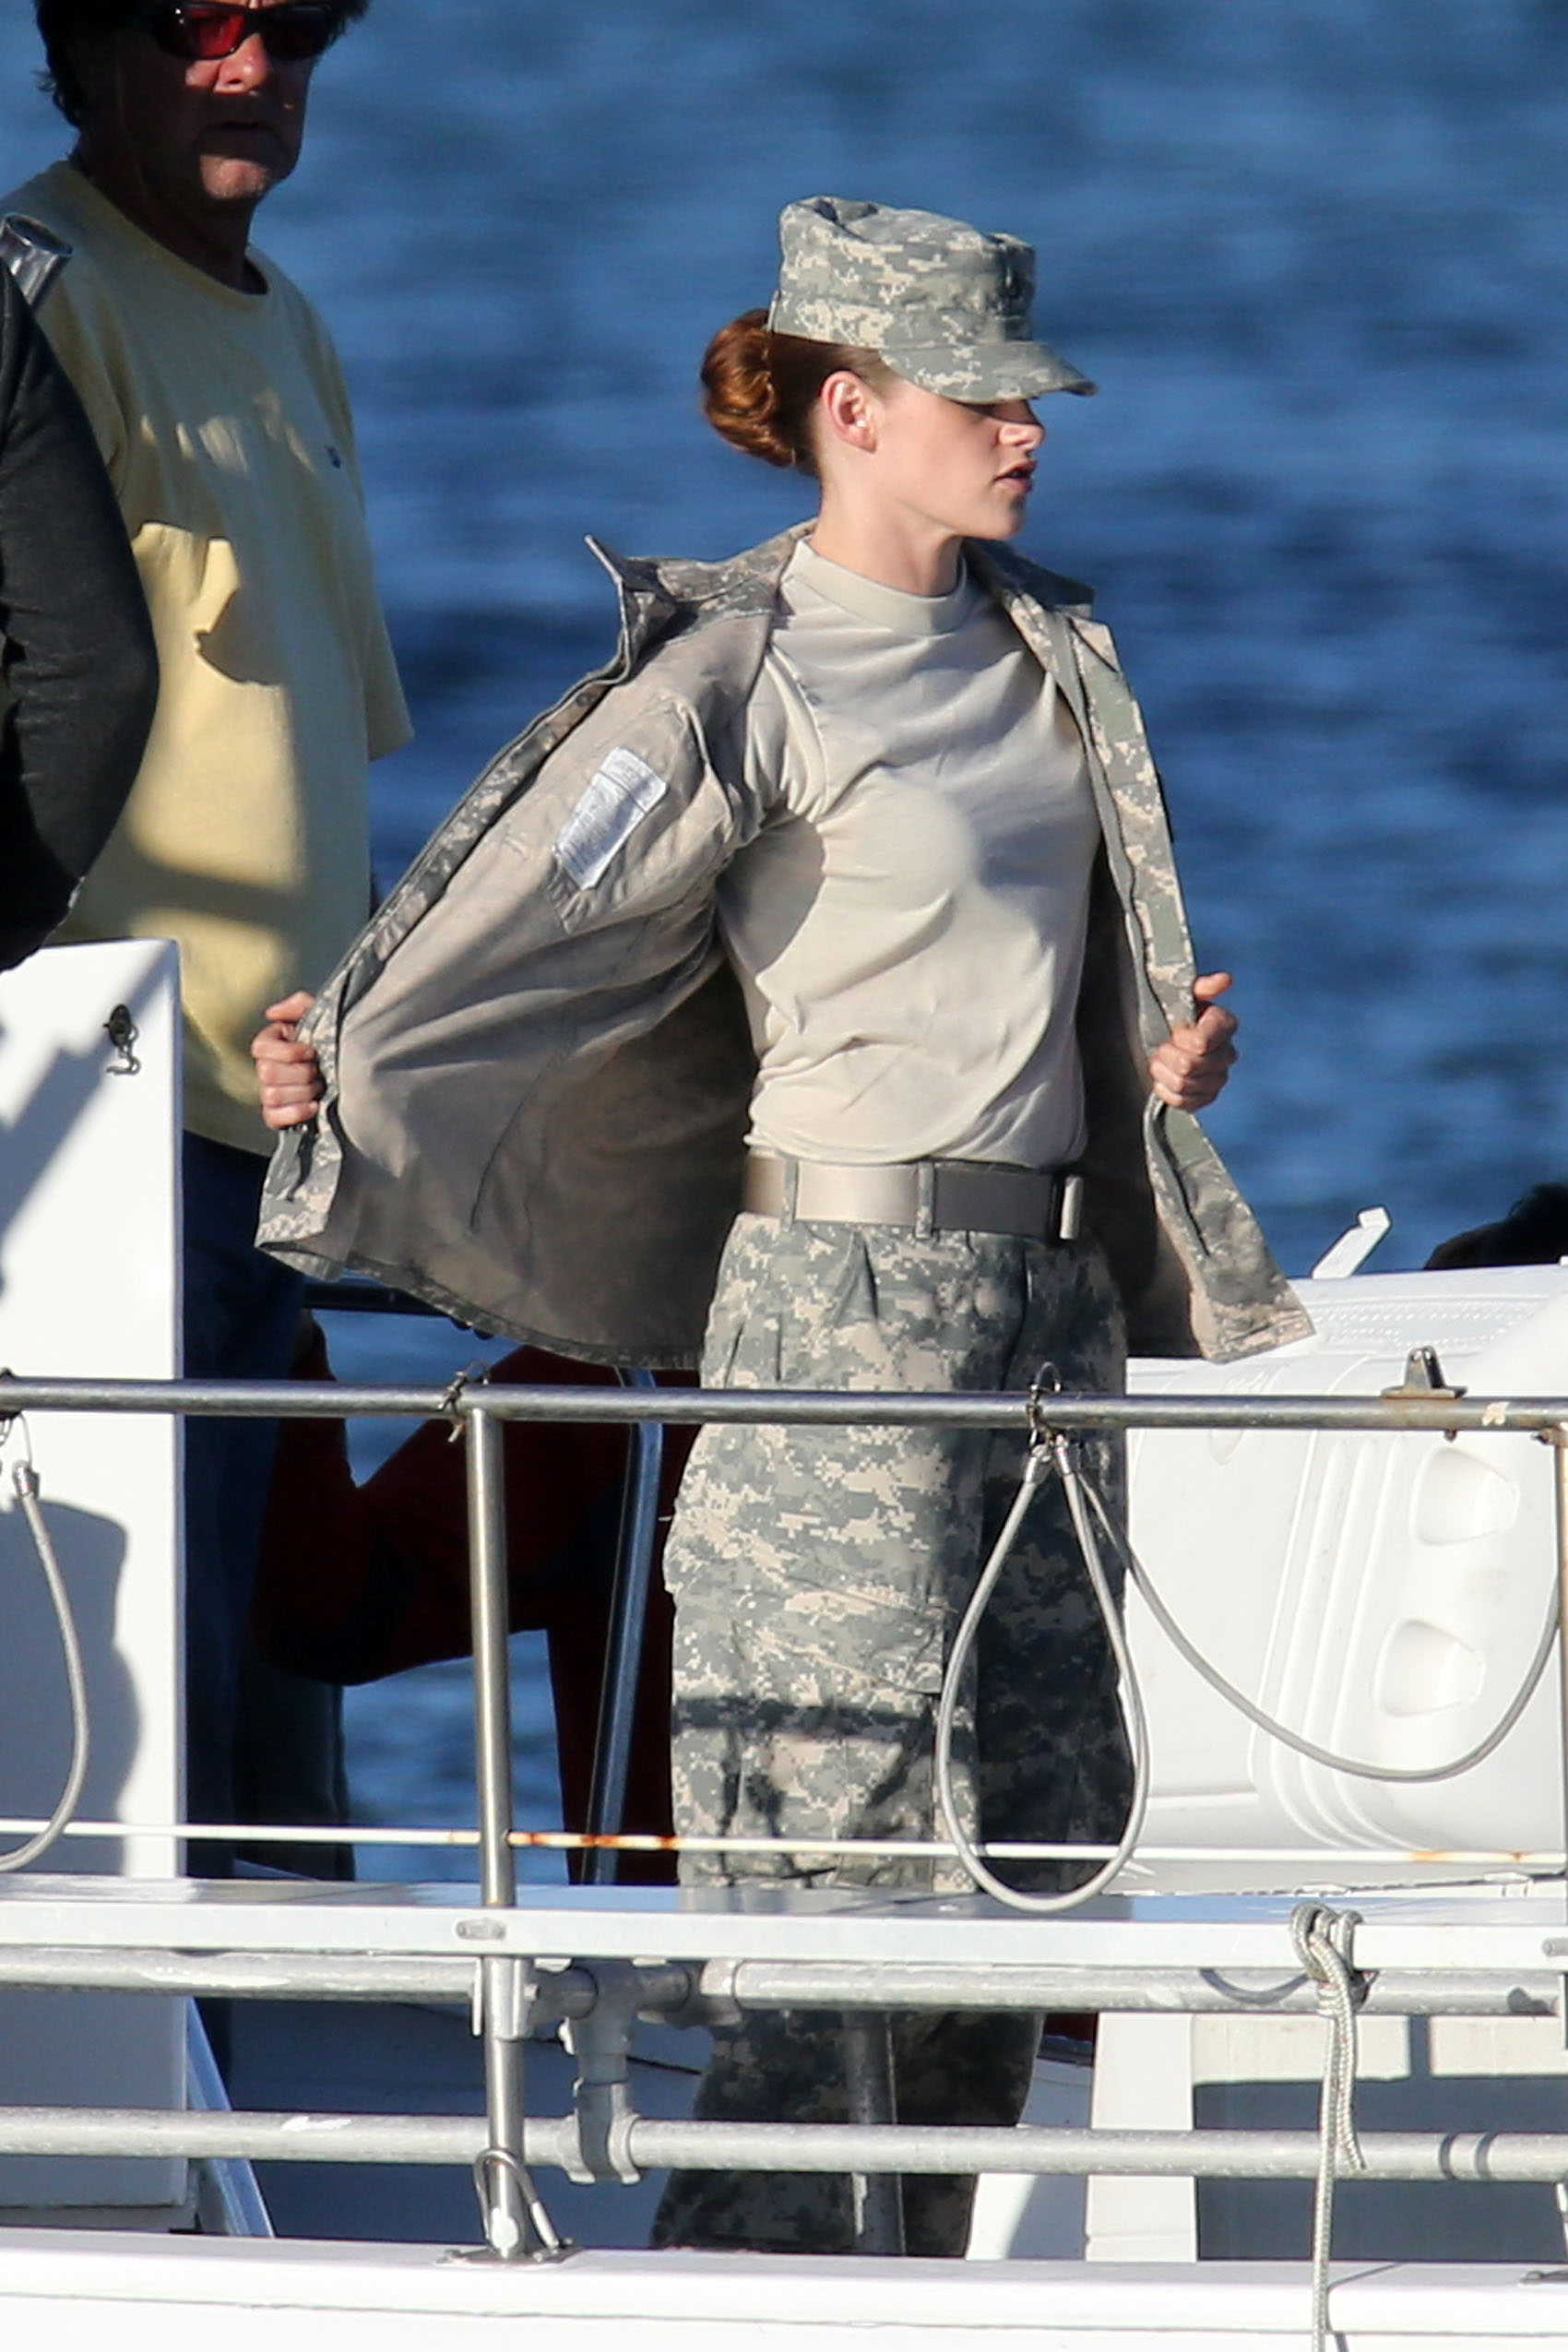 General photo of Kristen Stewart